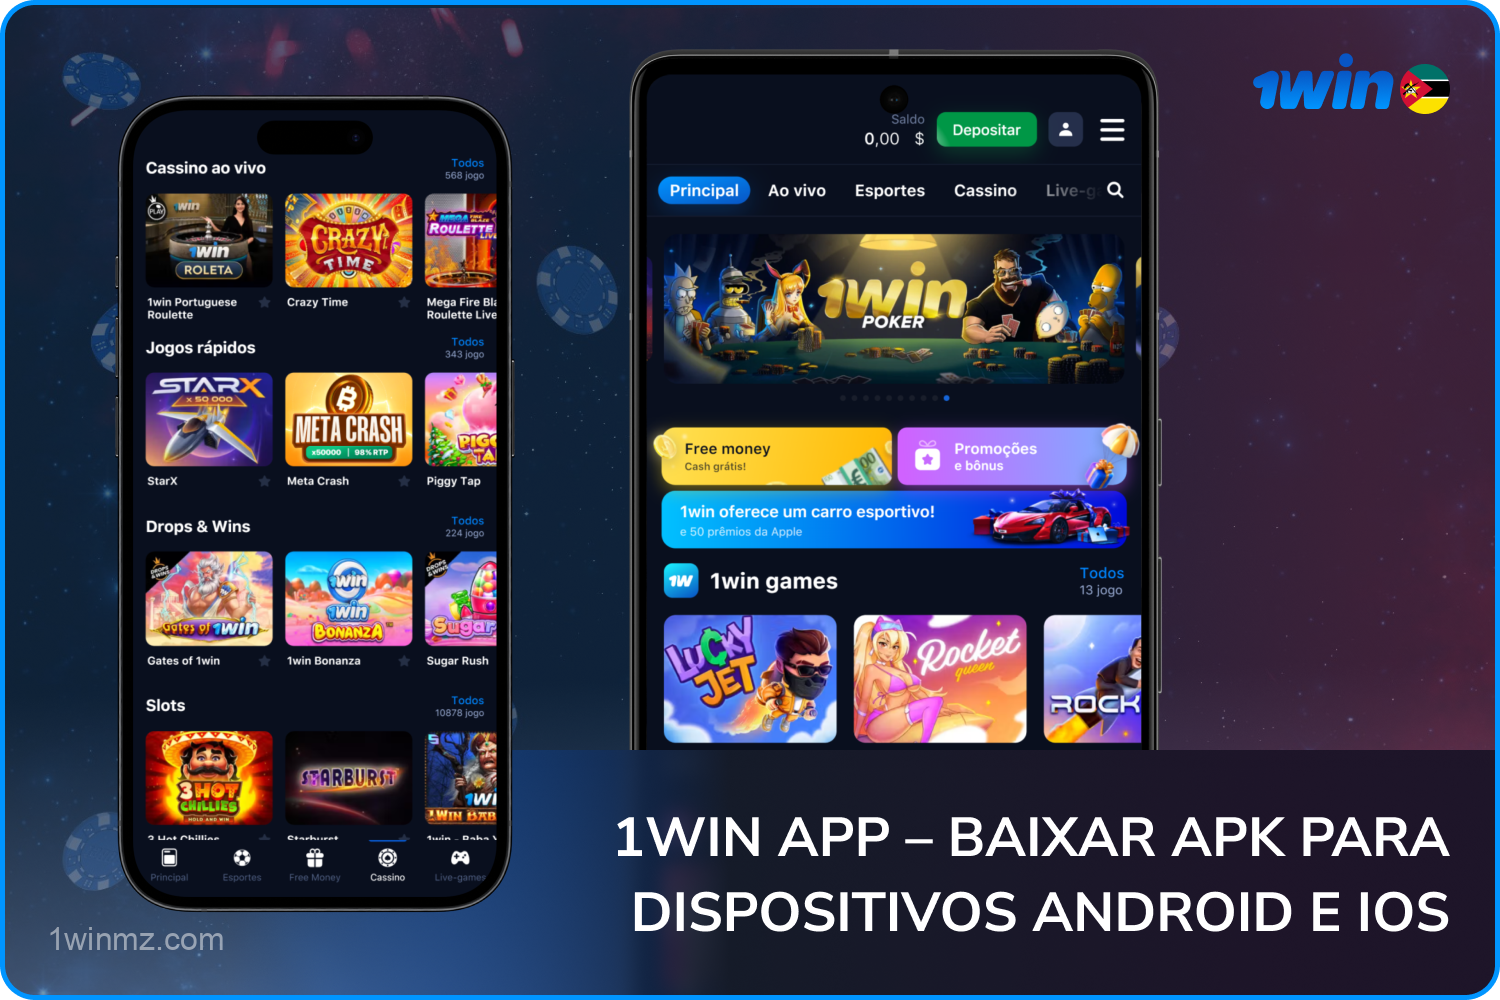 O aplicativo móvel 1win para apostas esportivas e jogos de cassino pode ser baixado por usuários moçambicanos para dispositivos Android e iOS